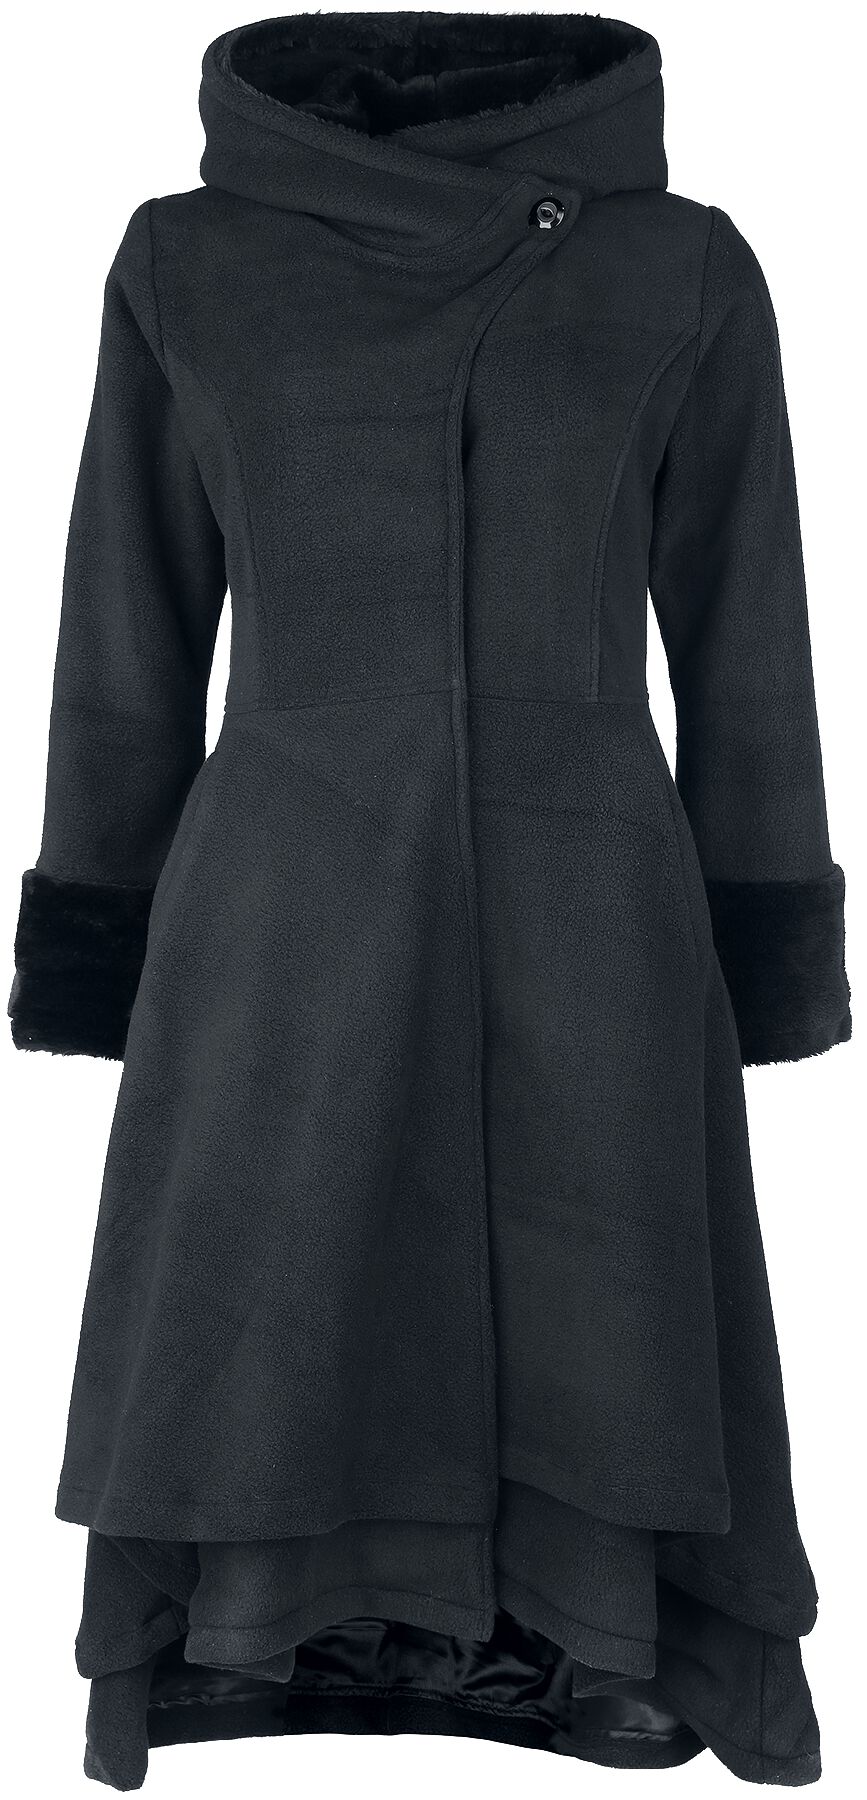 Vixxsin Gloaming Coat Mantel schwarz in M von Vixxsin